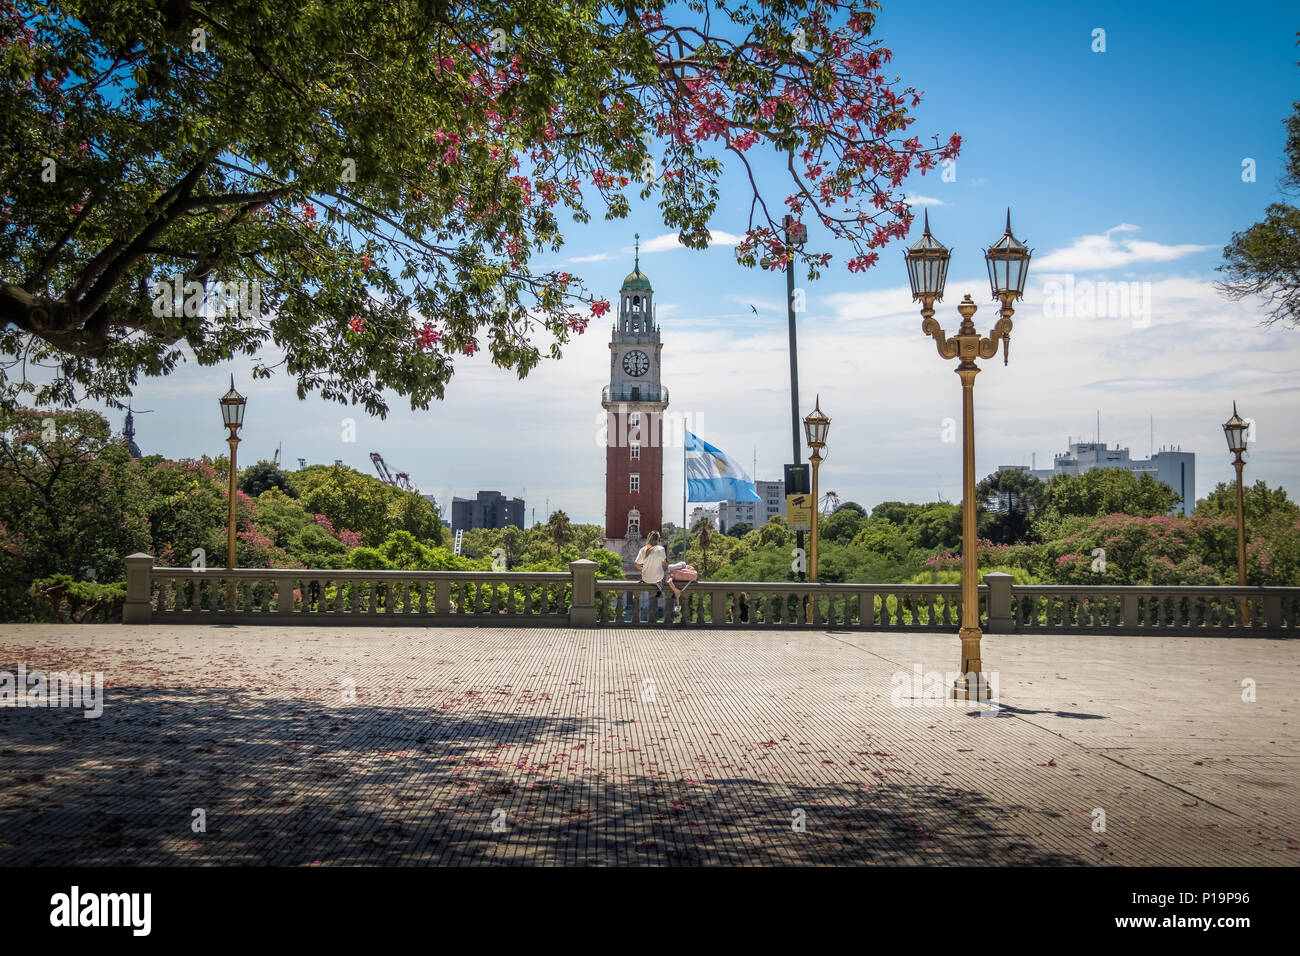 La place San Martin (Plaza San Martin) et tour monumentale (Torre Monumental) - région de Retiro à Buenos Aires, Argentine Banque D'Images